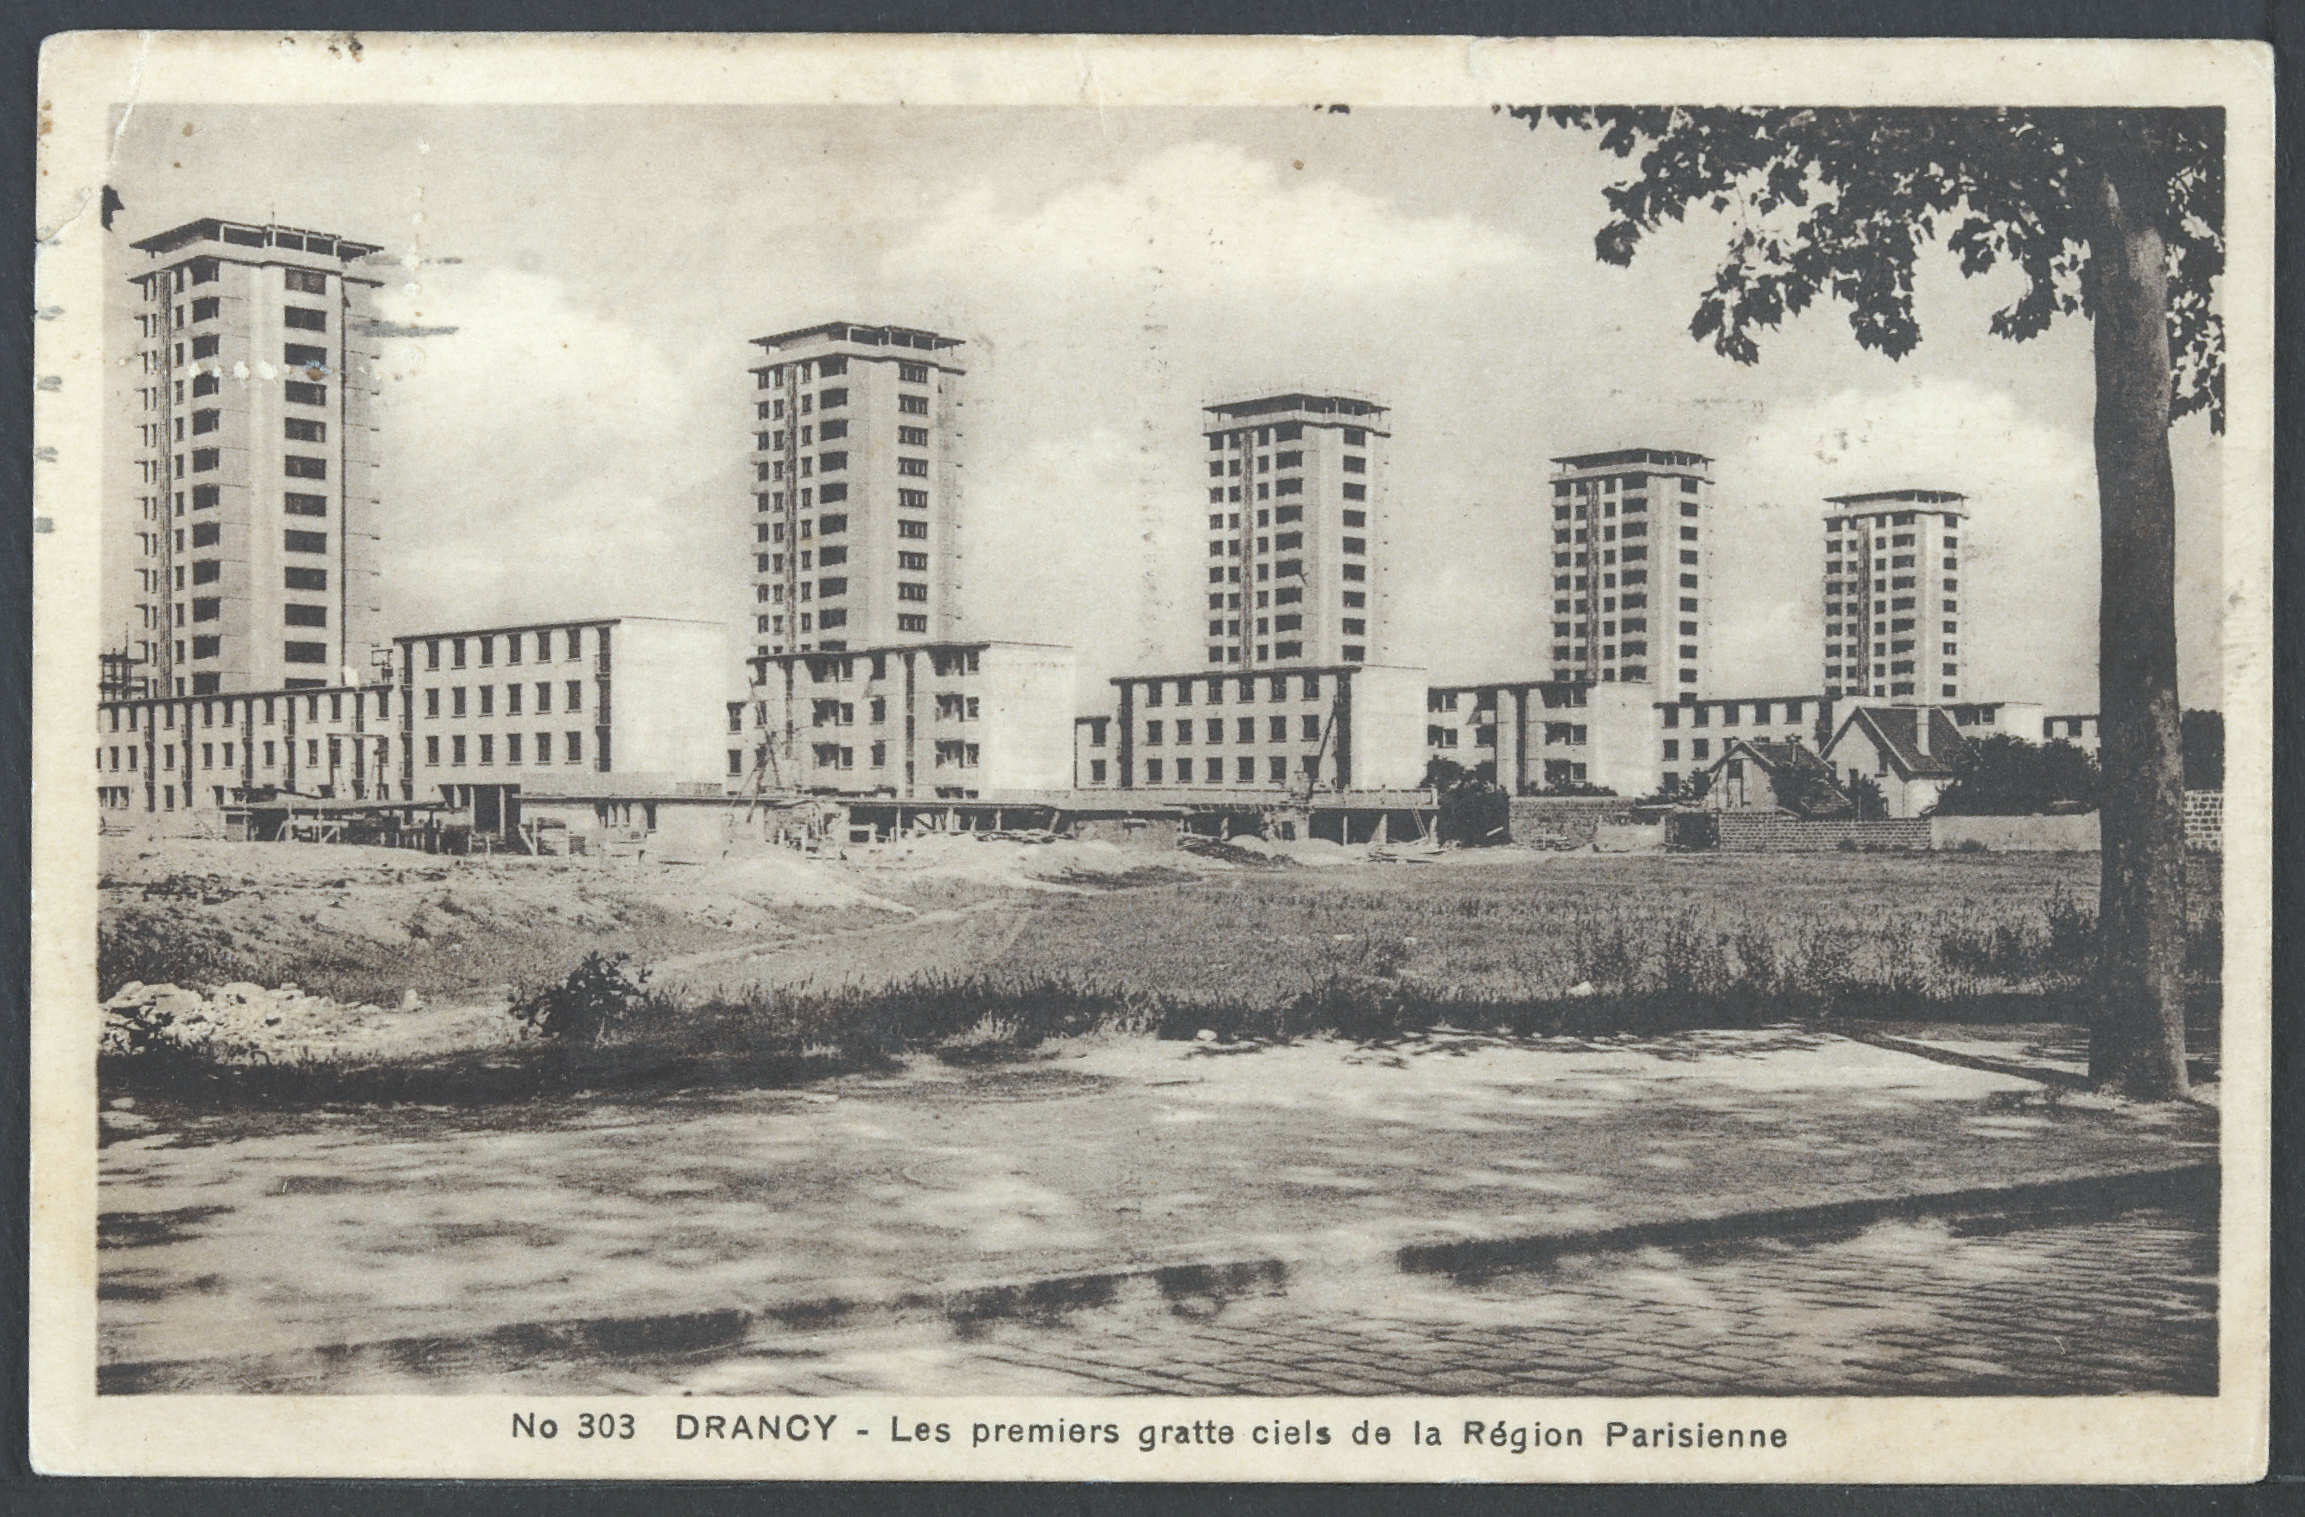 Les gratte-ciel oubliés de la cité de la Muette (1931-1976)